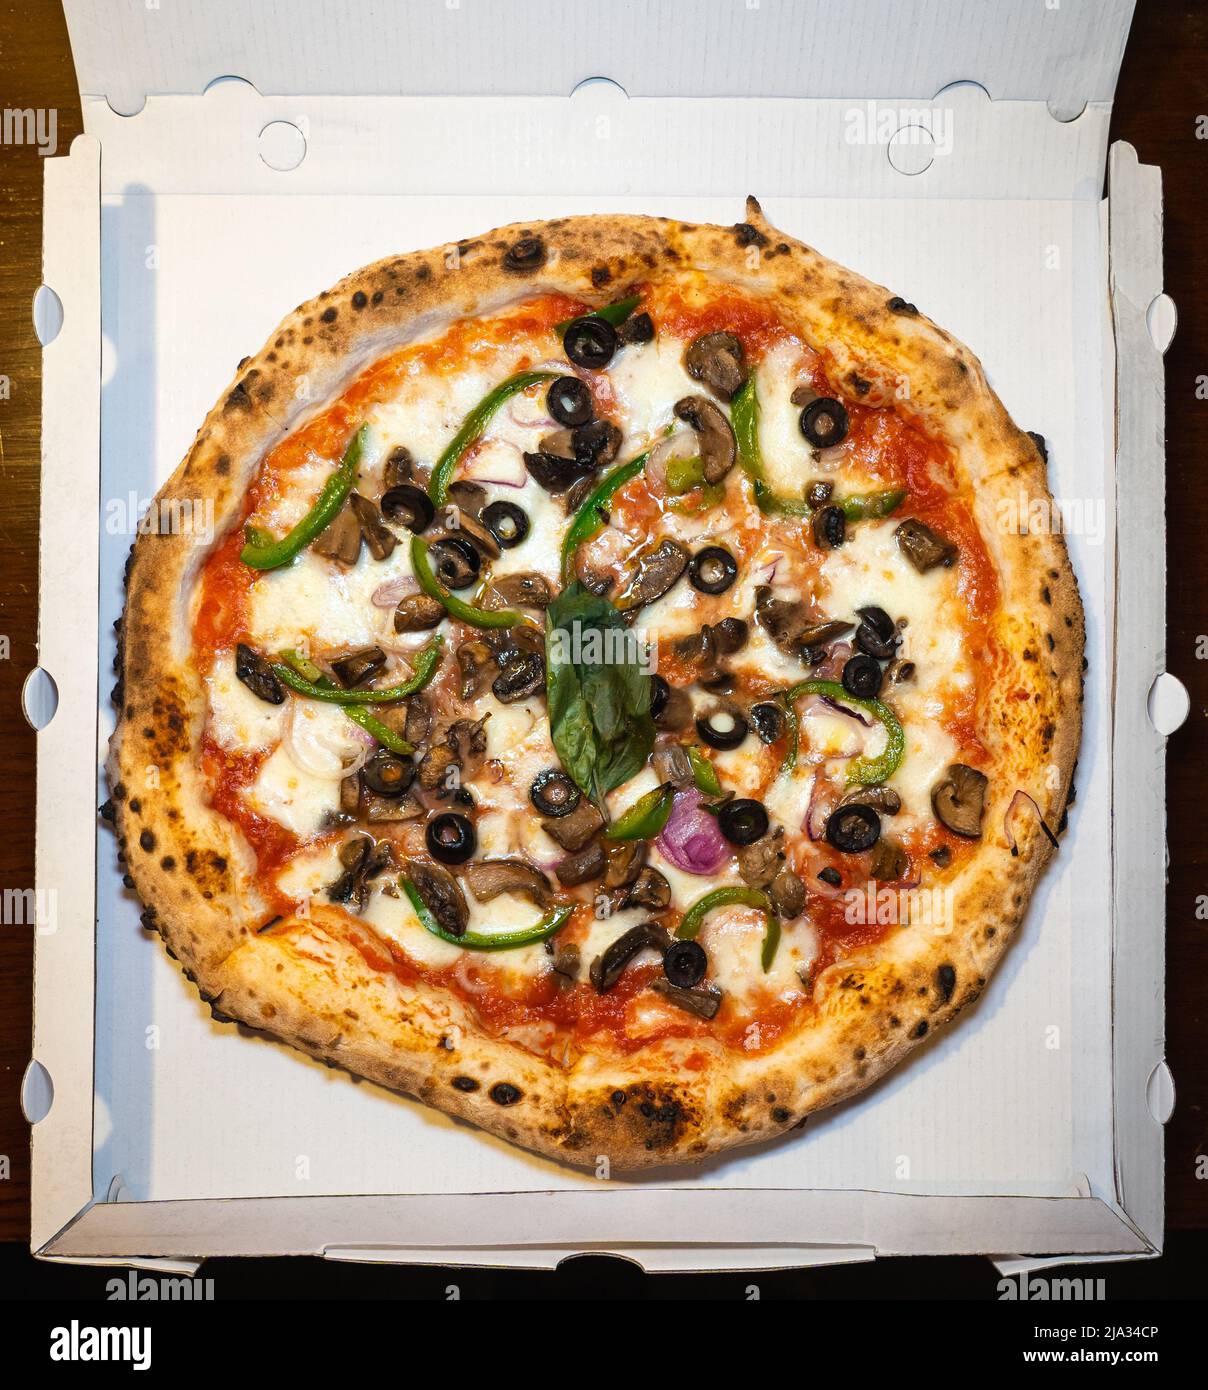 Eine vegetarische neapolitanische Pizza mit Pilzen, schwarzen Oliven, grünen Paprika, Zwiebeln, Mozzarella-Käse in einer weißen Pizzabox. Stockfoto